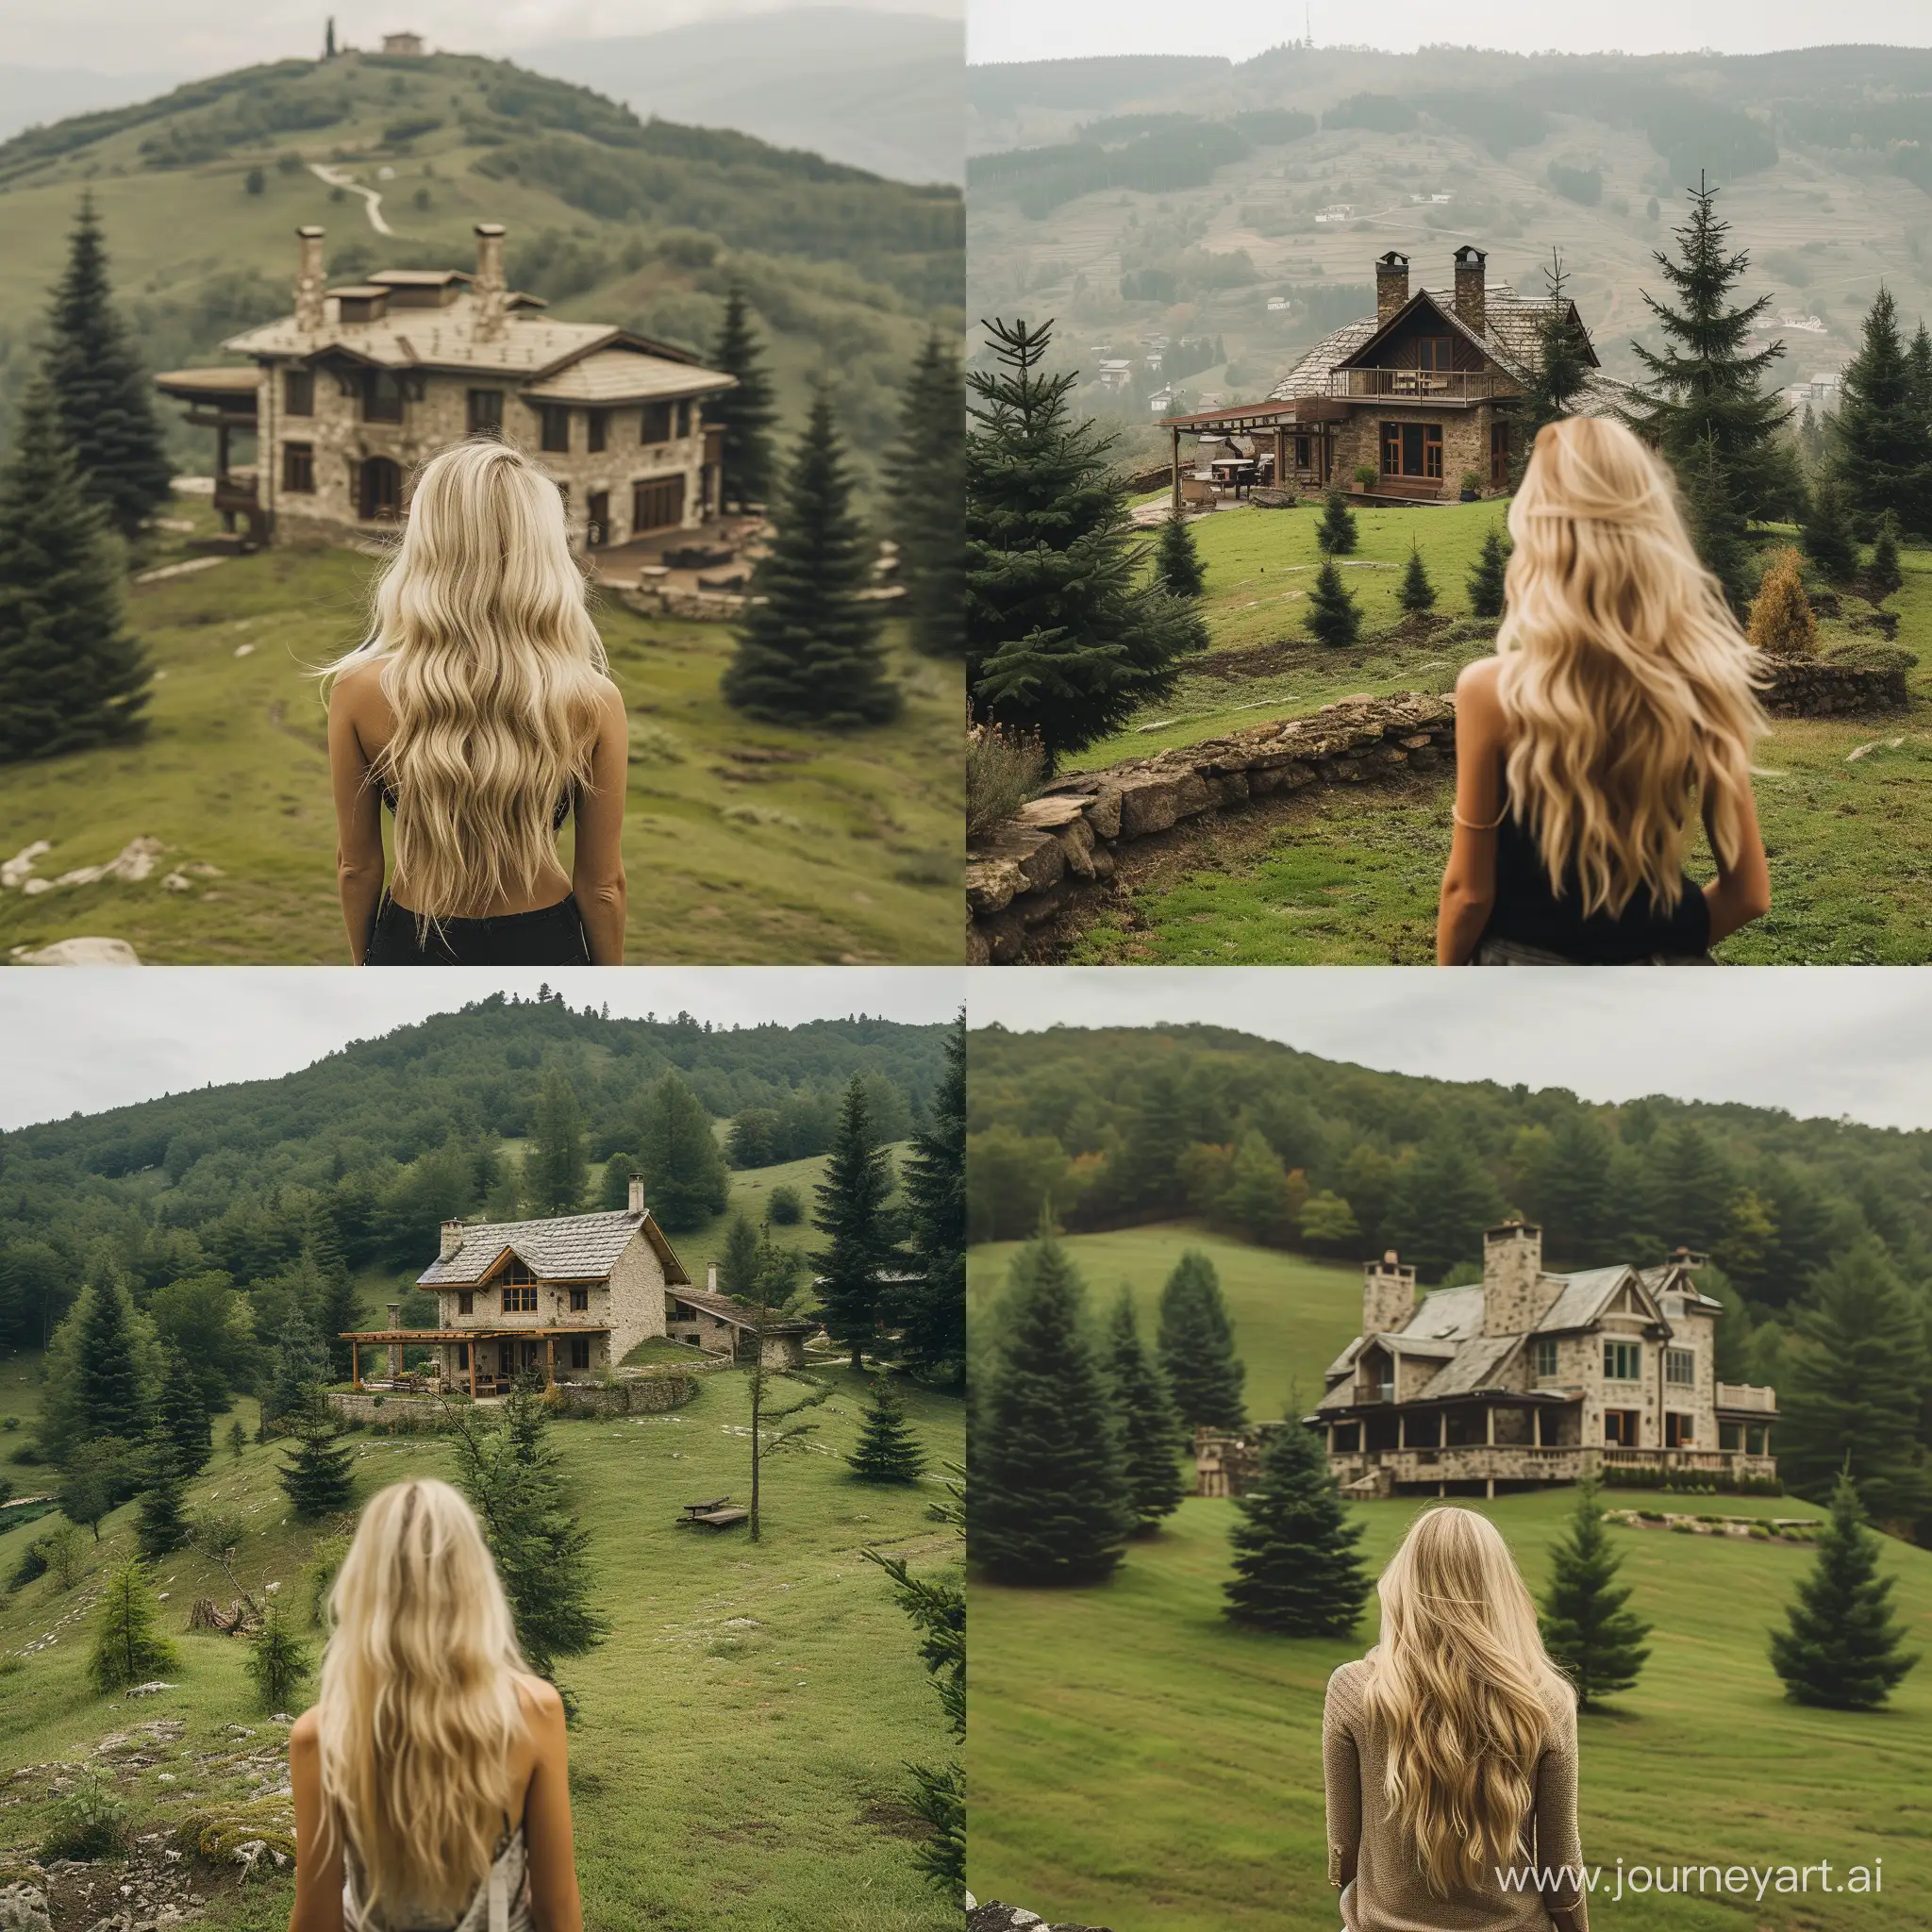 femme blonde de dos au sommet d'une colline devant paysage de collines avec maison ancienne en pierres prolongée d'une grande terrasse en bois entourée de conifères sur sol vert